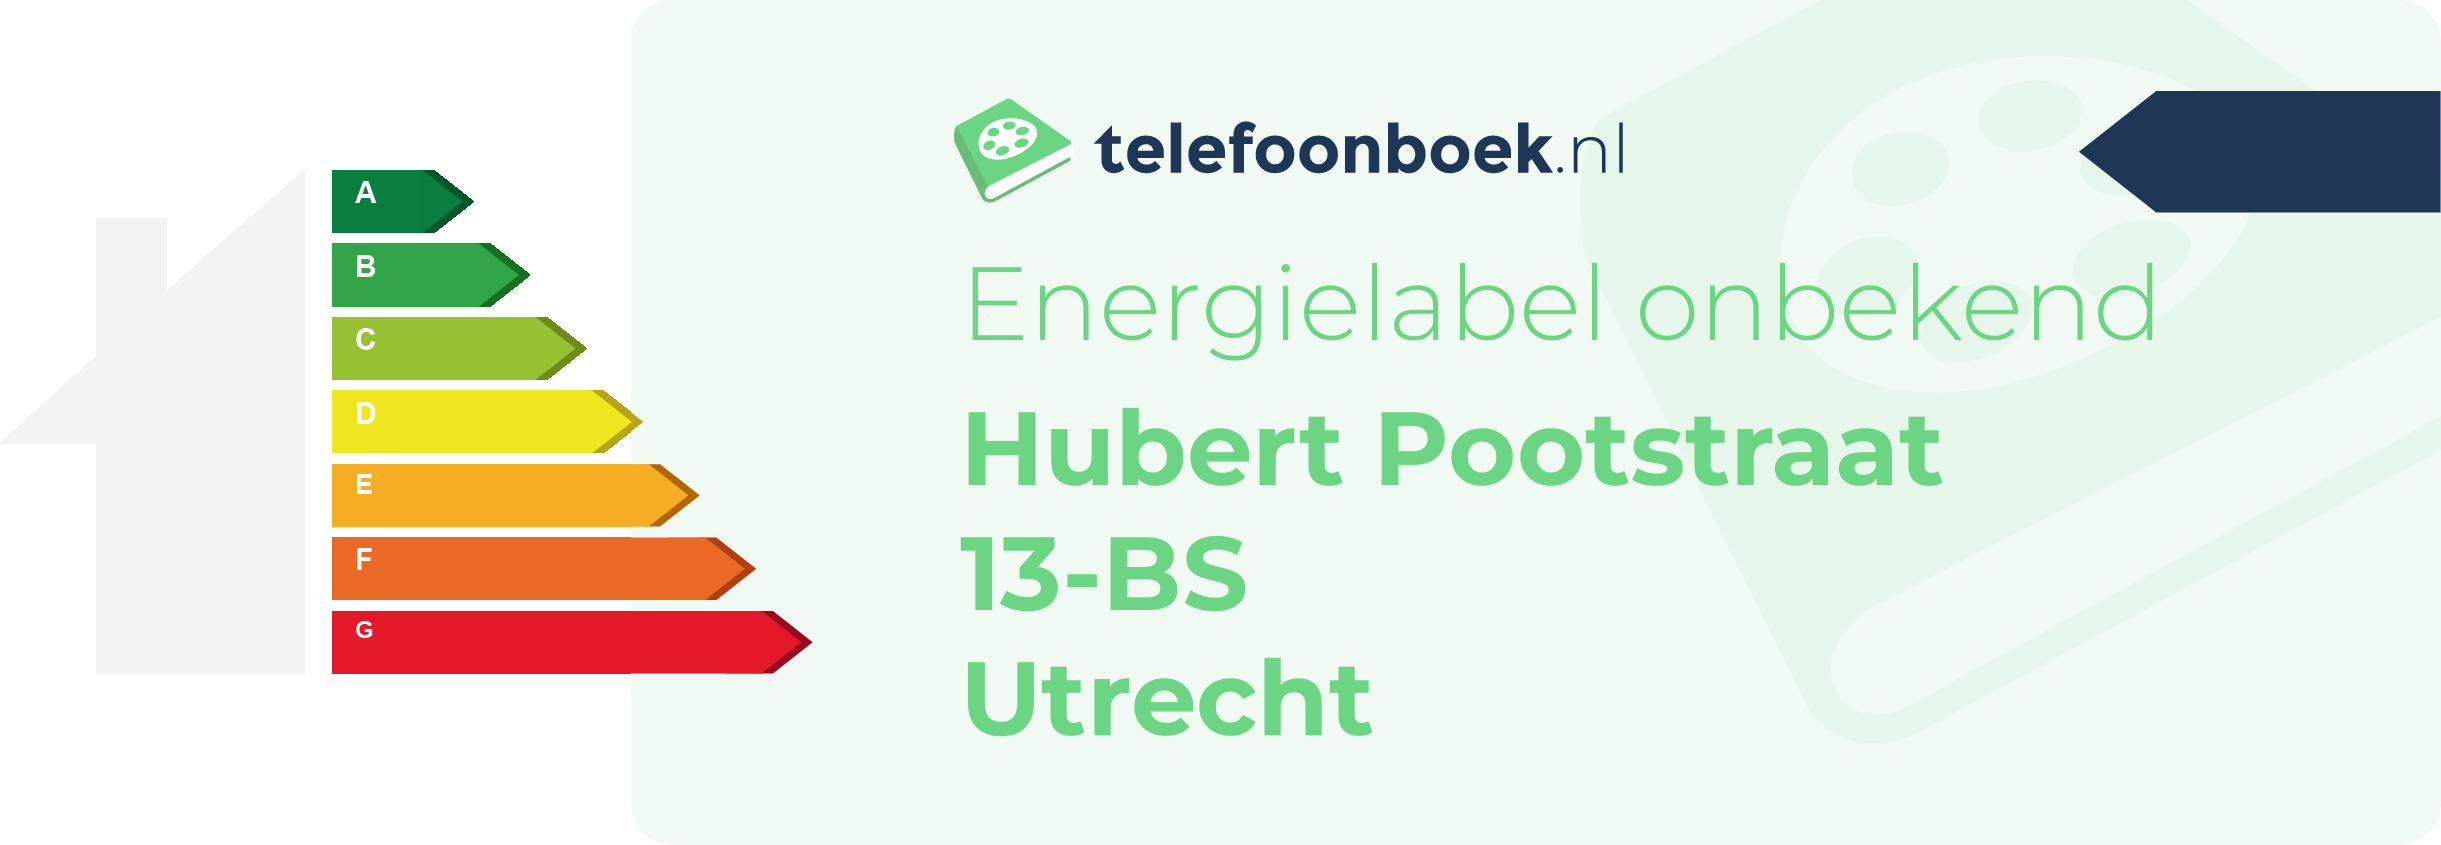 Energielabel Hubert Pootstraat 13-BS Utrecht